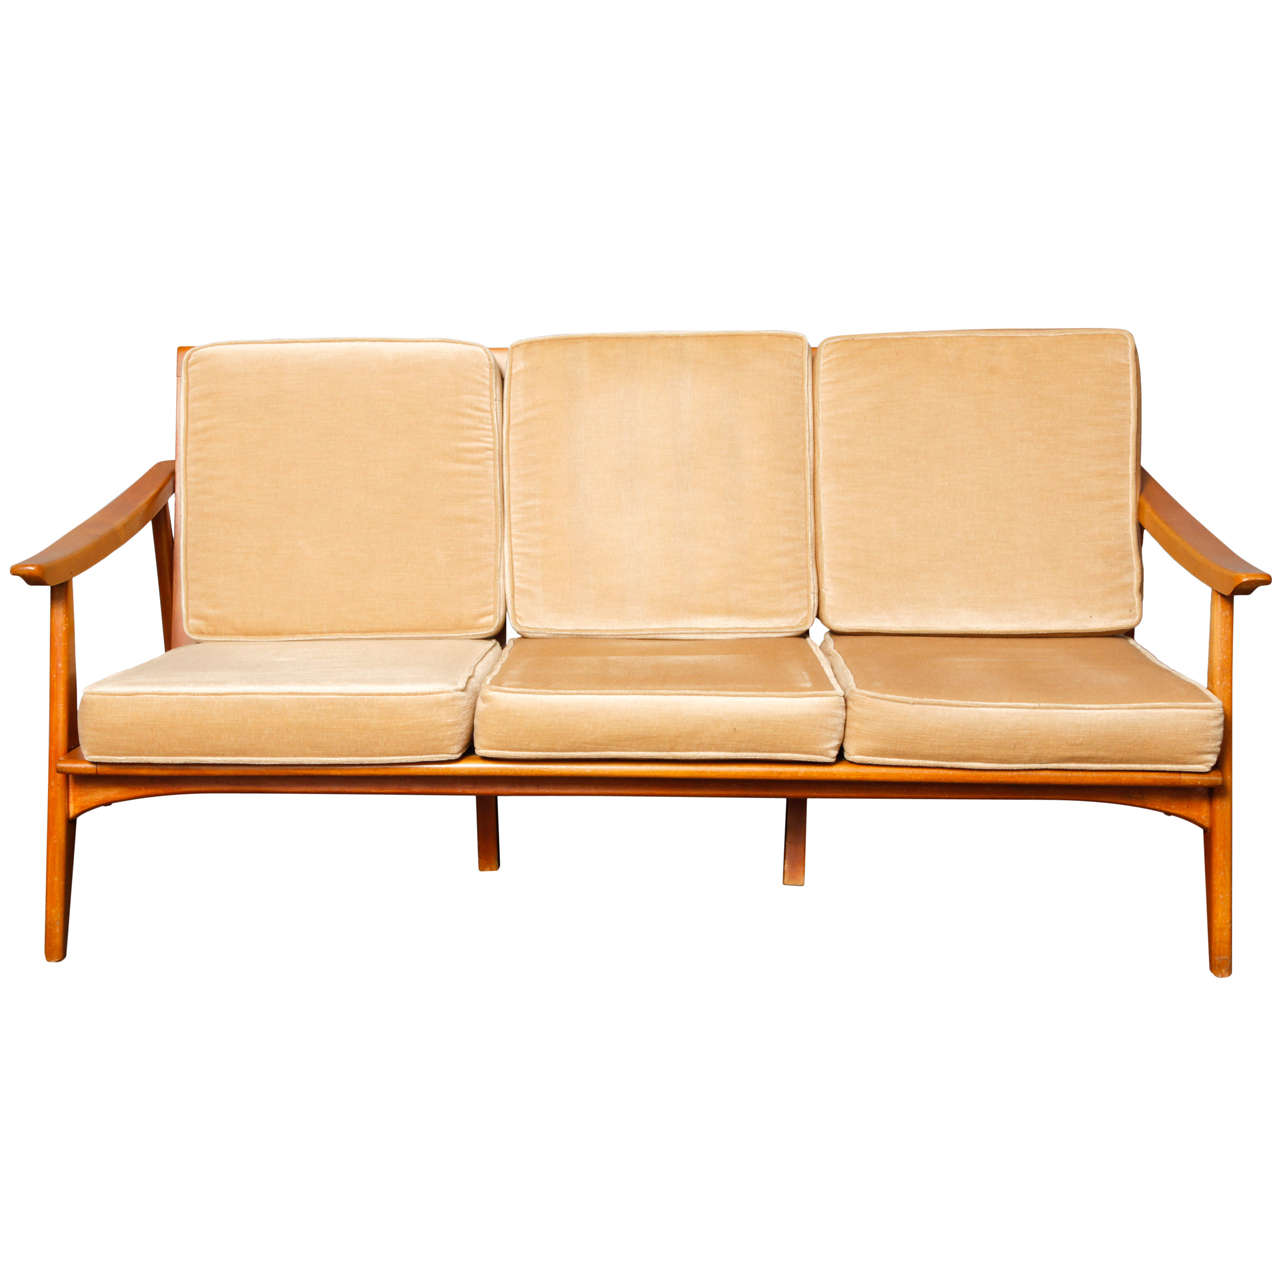 1950s Italian Design Sofa